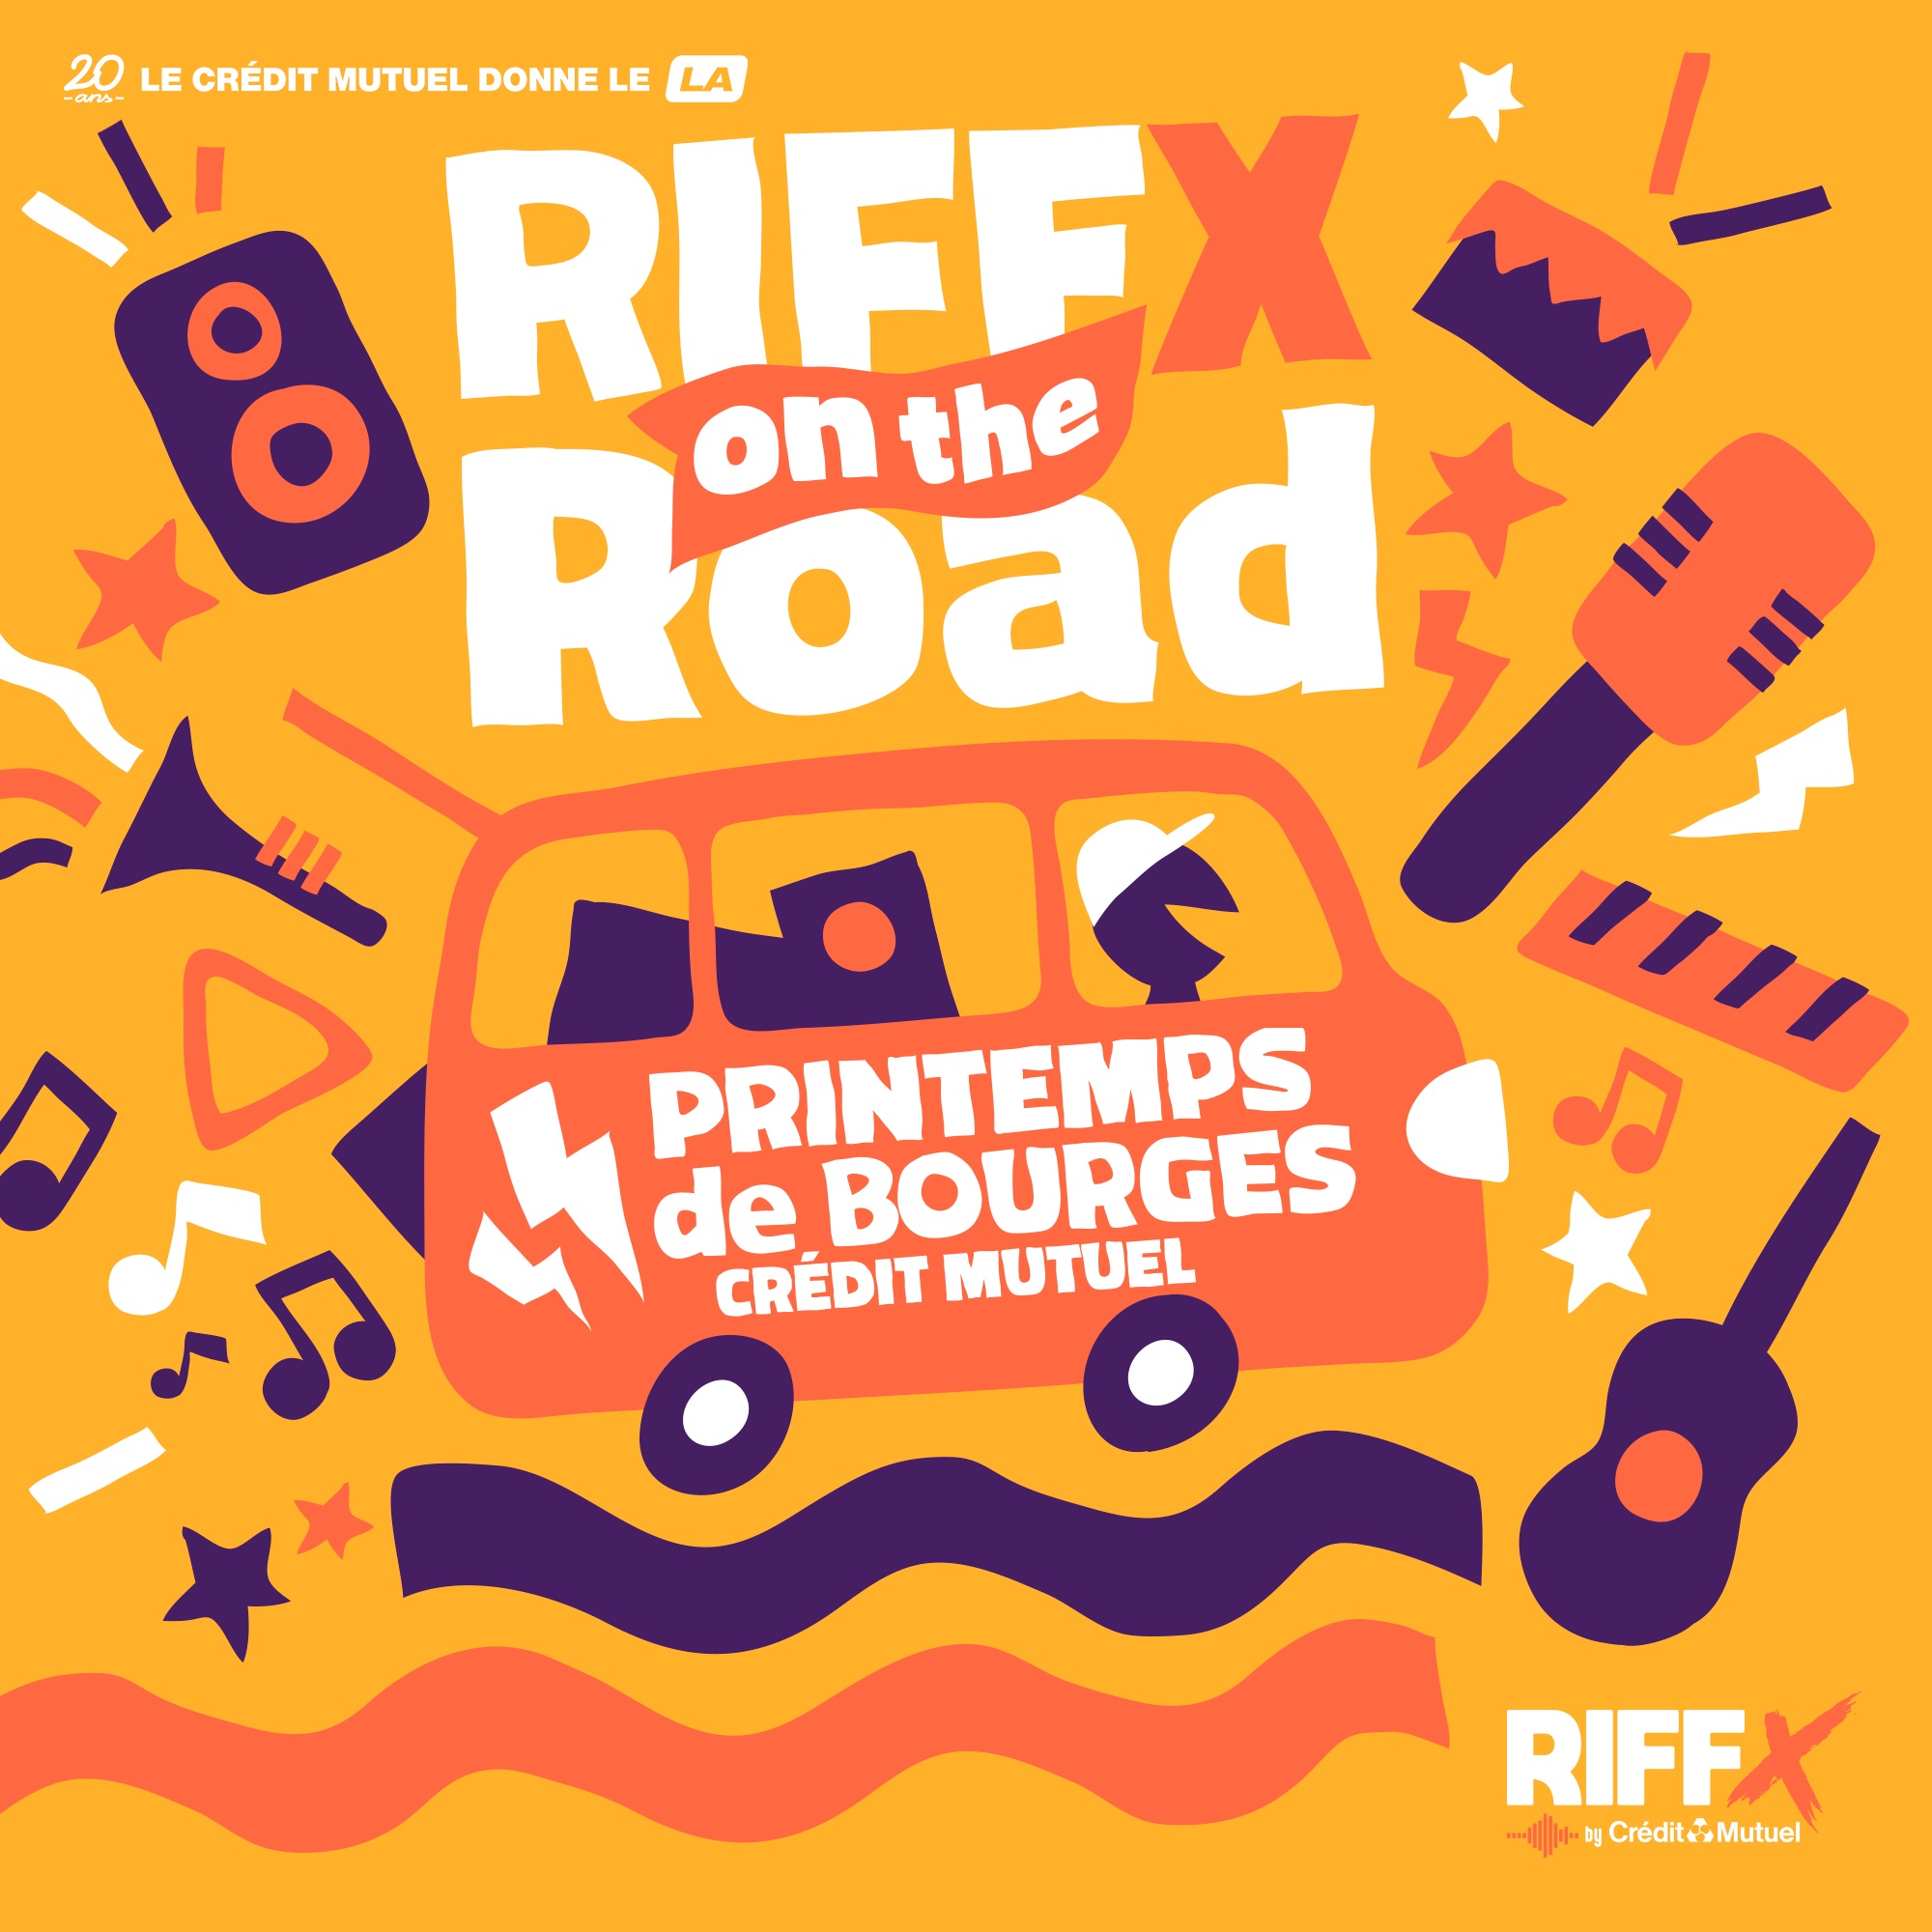 RIFFX on the Road : Épisode 3 au Printemps de Bourges Crédit Mutuel